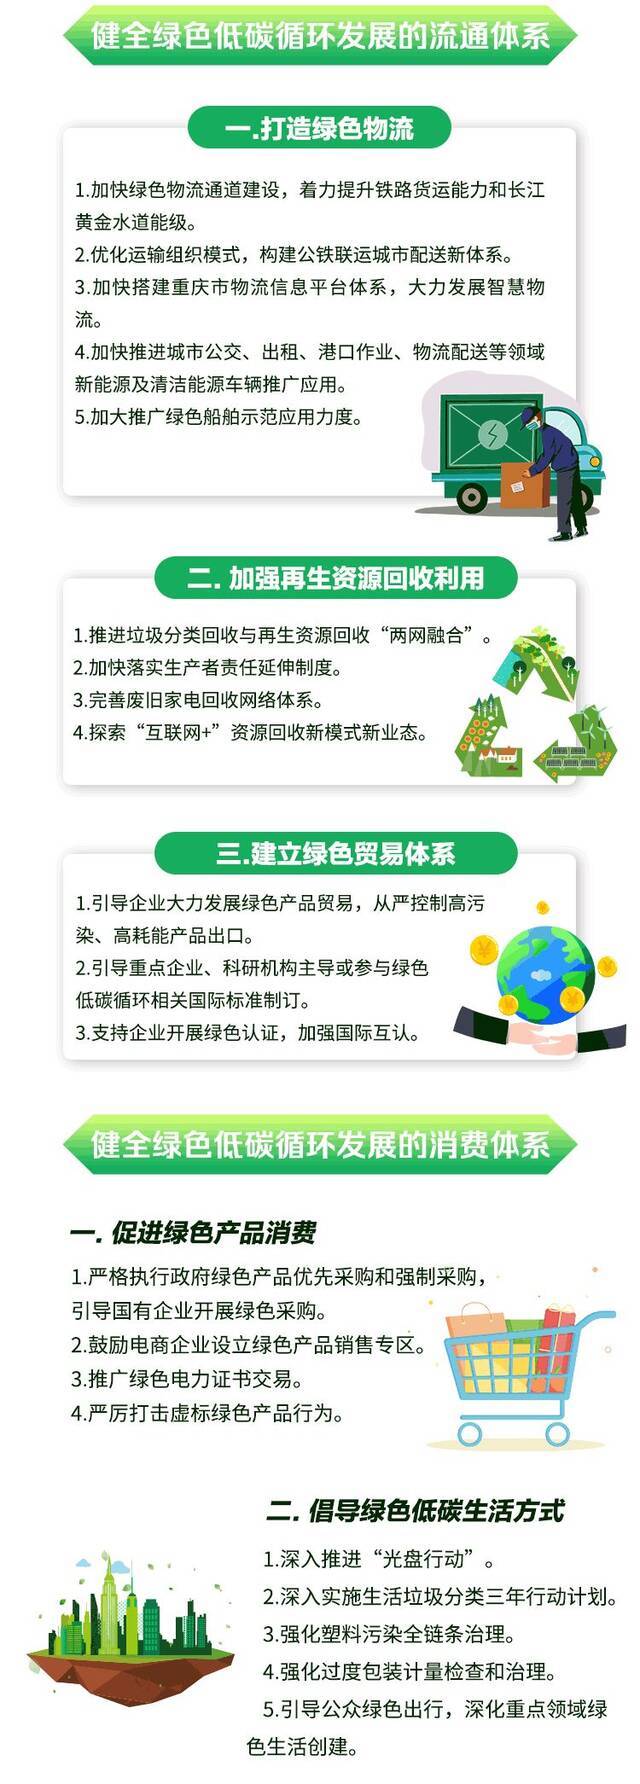 定了！重庆计划到2025年初步形成绿色低碳循环经济体系